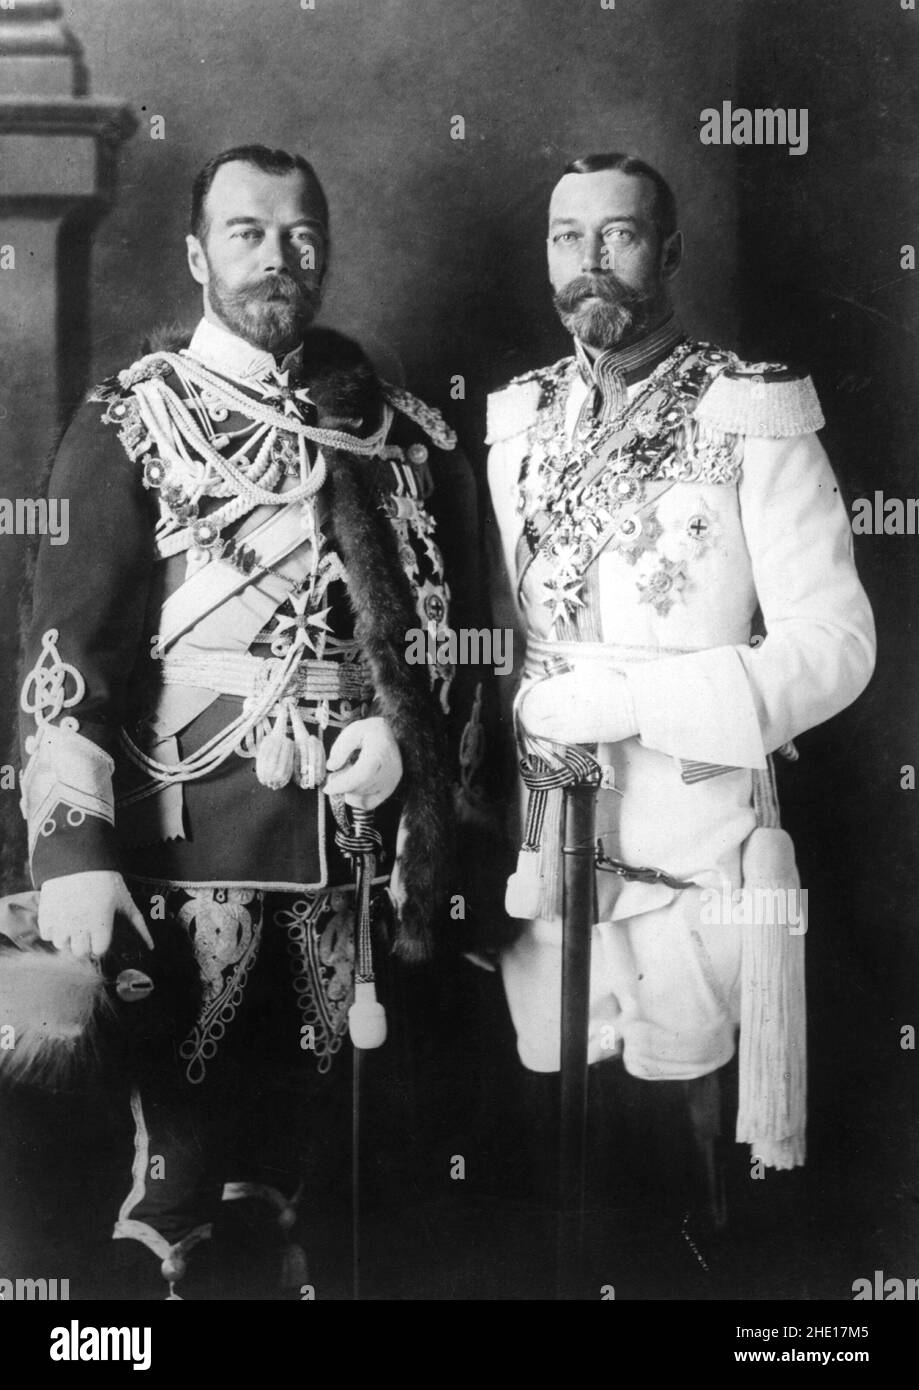 La Dinastía Romanov - el zar Nicolás II y el rey Jorge V muestran una semejanza familiar bastante llamativa Foto de stock